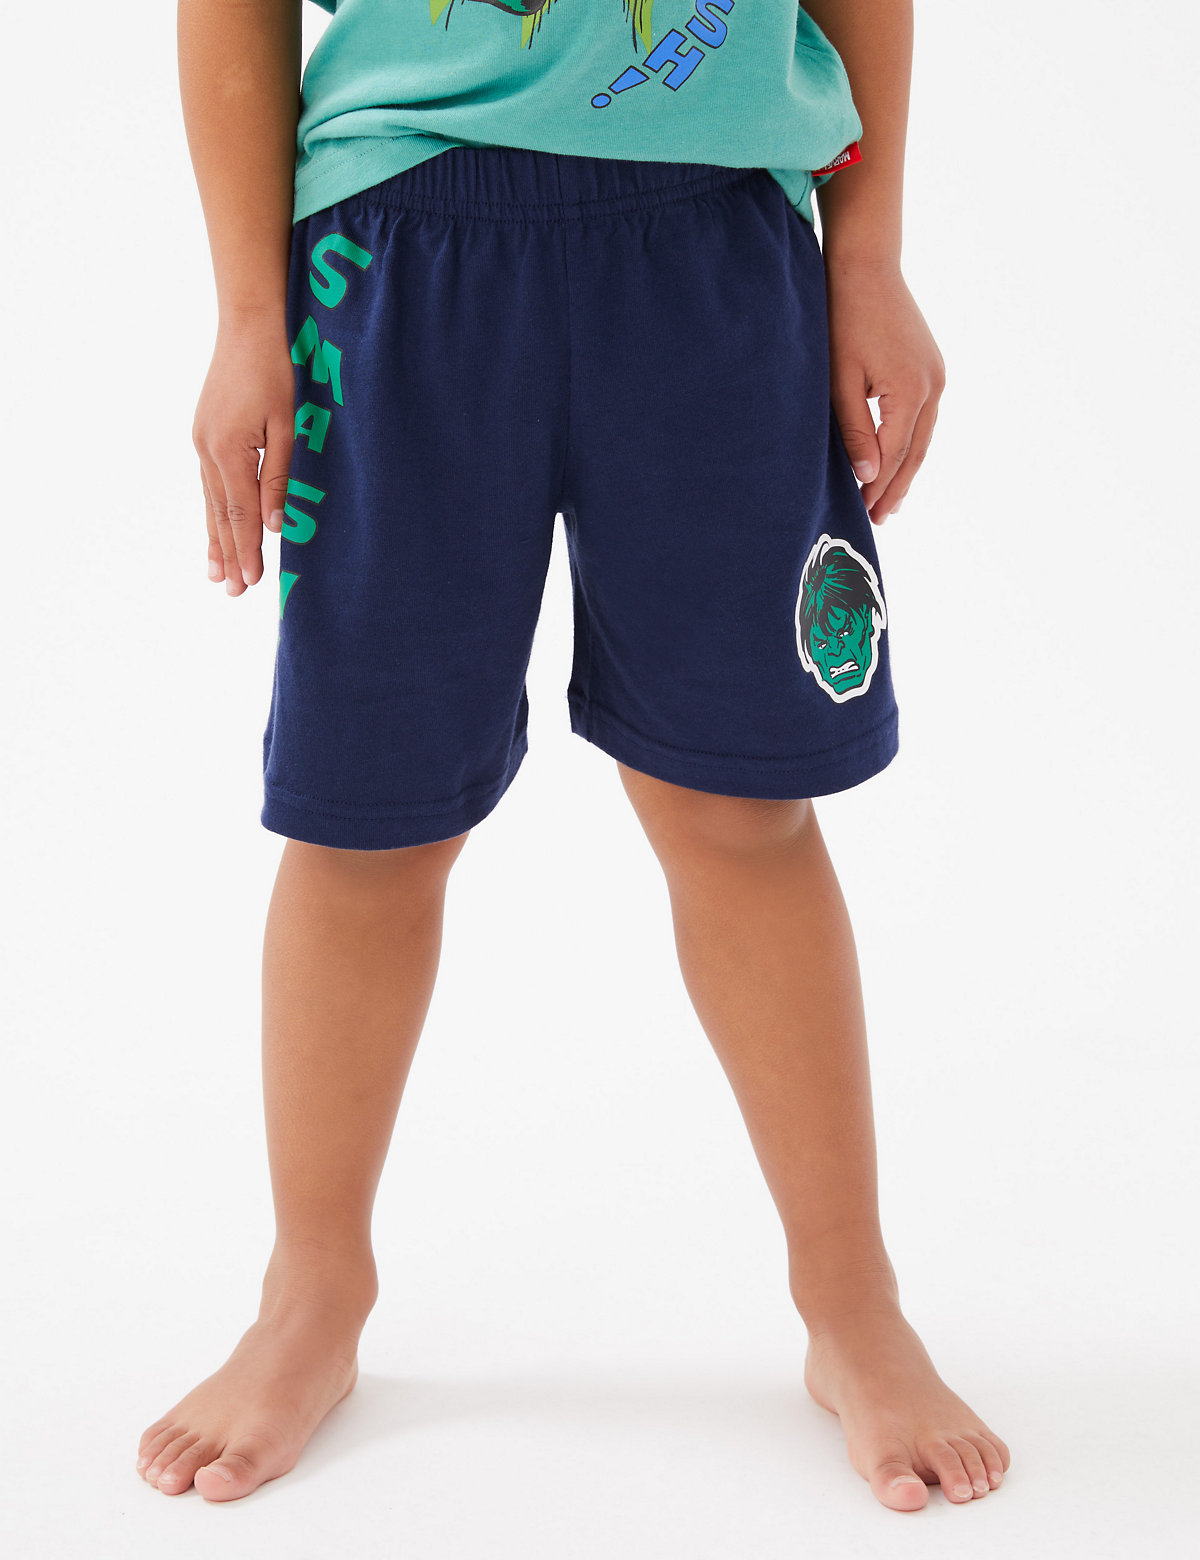 Hulk™ Short Pyjamas (3-12 Yrs)